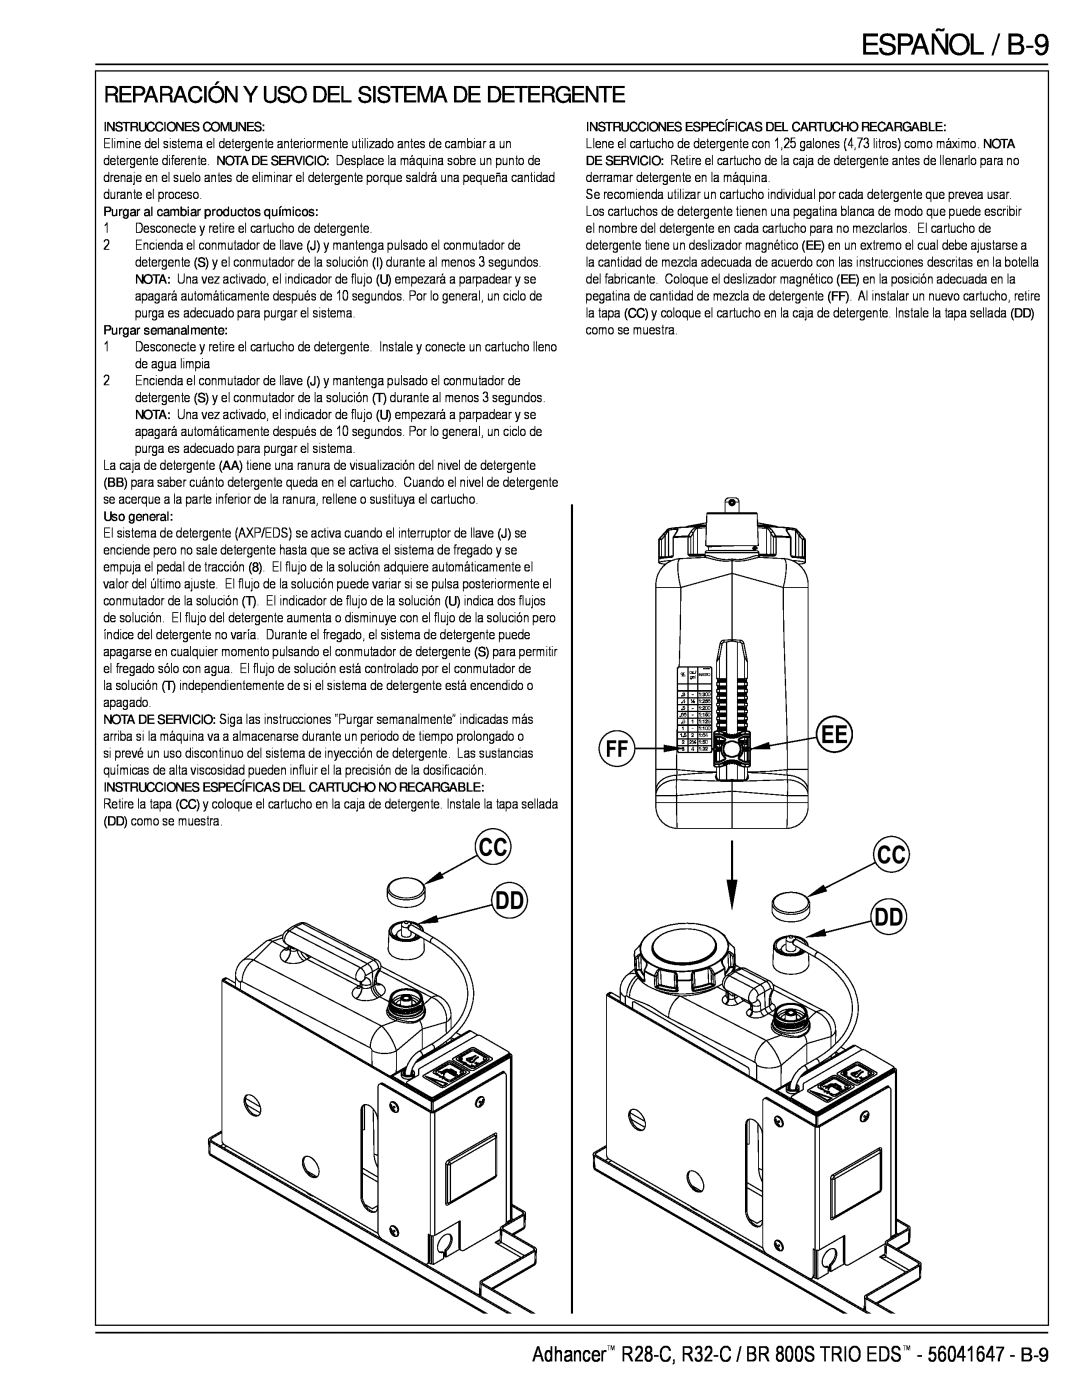 Nilfisk-Advance America 56316025 (R32-C) ESPAÑOL / B-9, Reparación Y Uso Del Sistema De Detergente, Instrucciones Comunes 